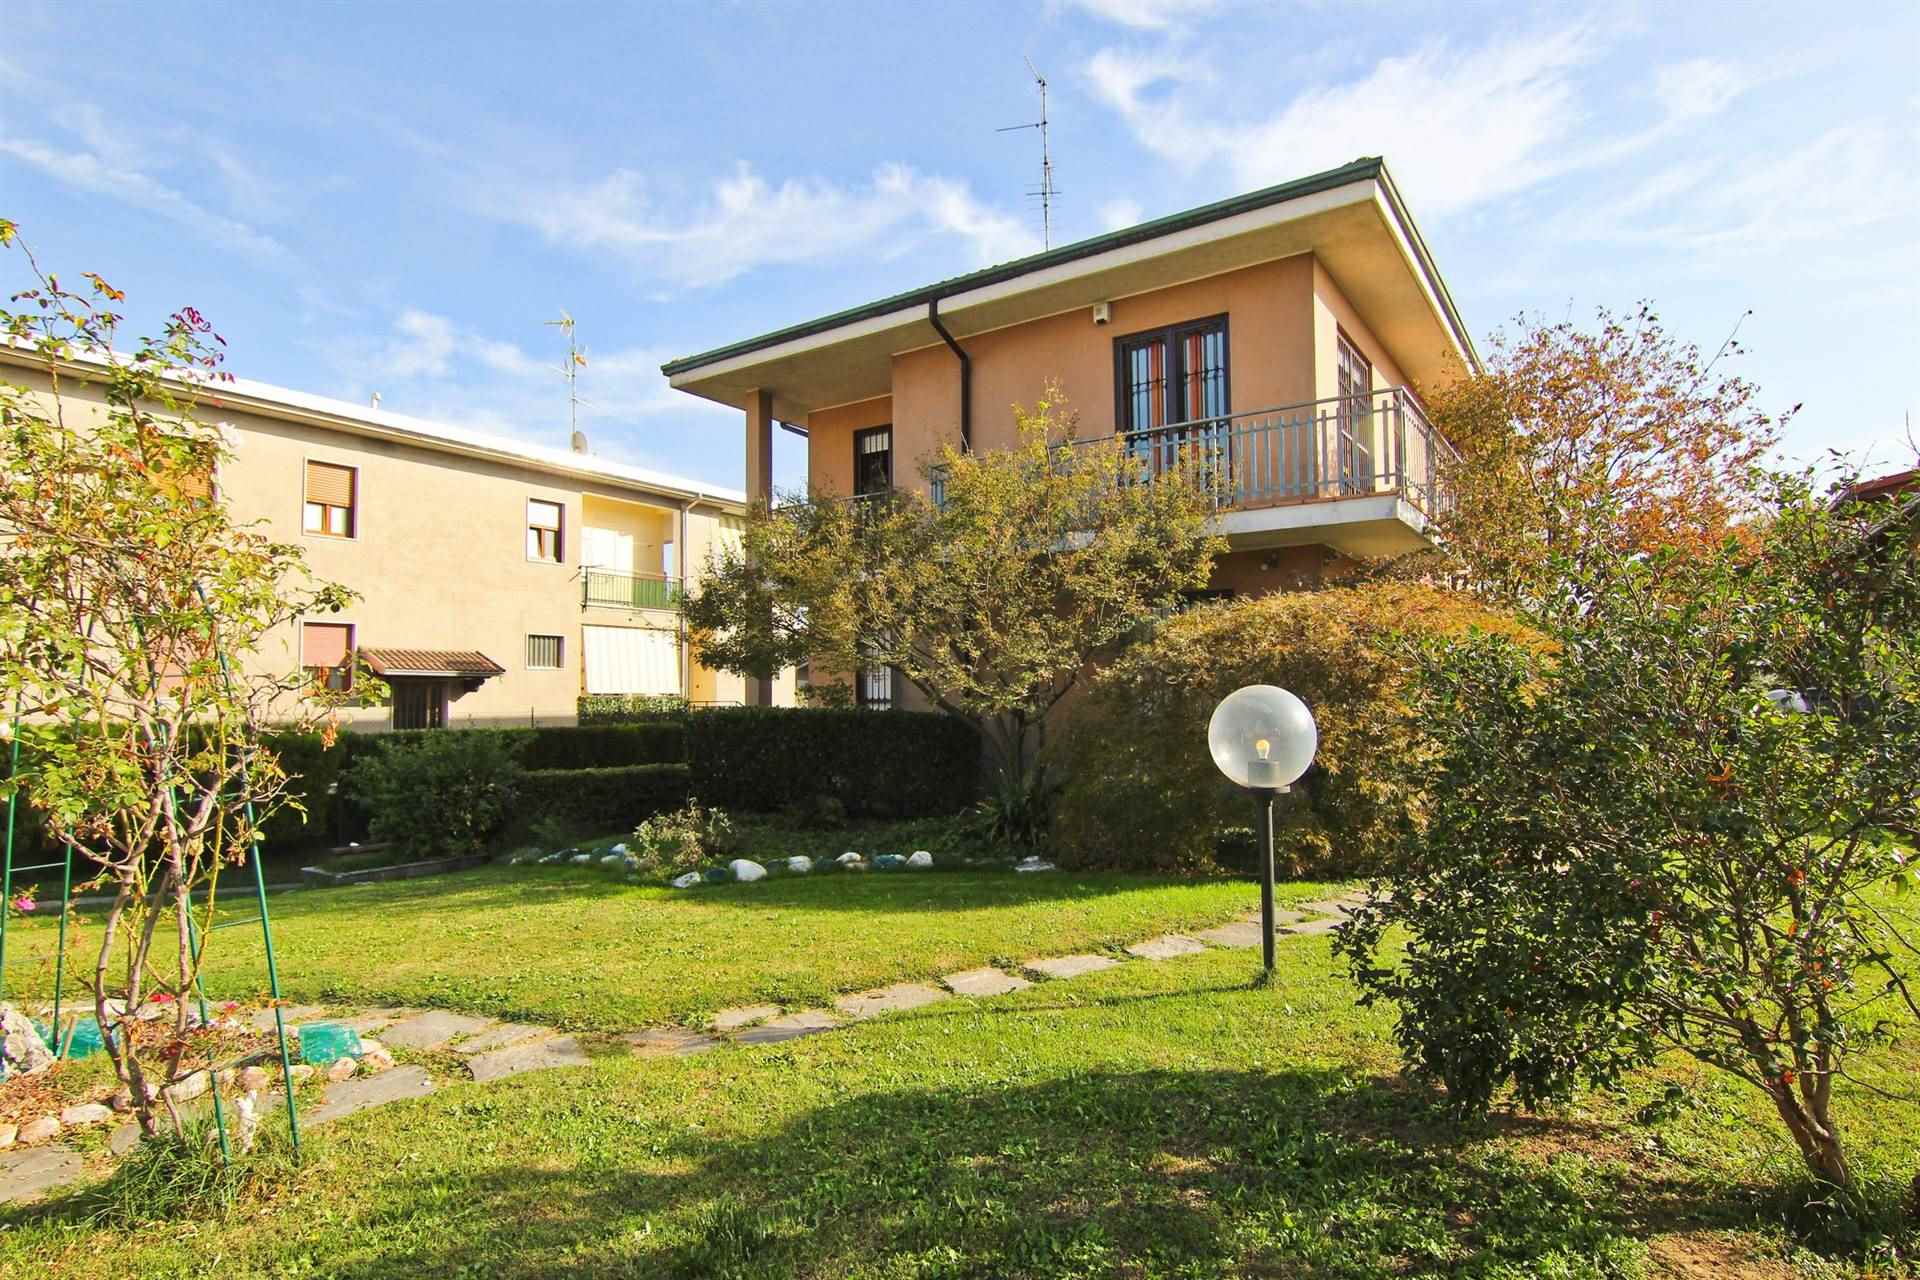 Villa bifamiliare in vendita a Cogliate Monza Brianza